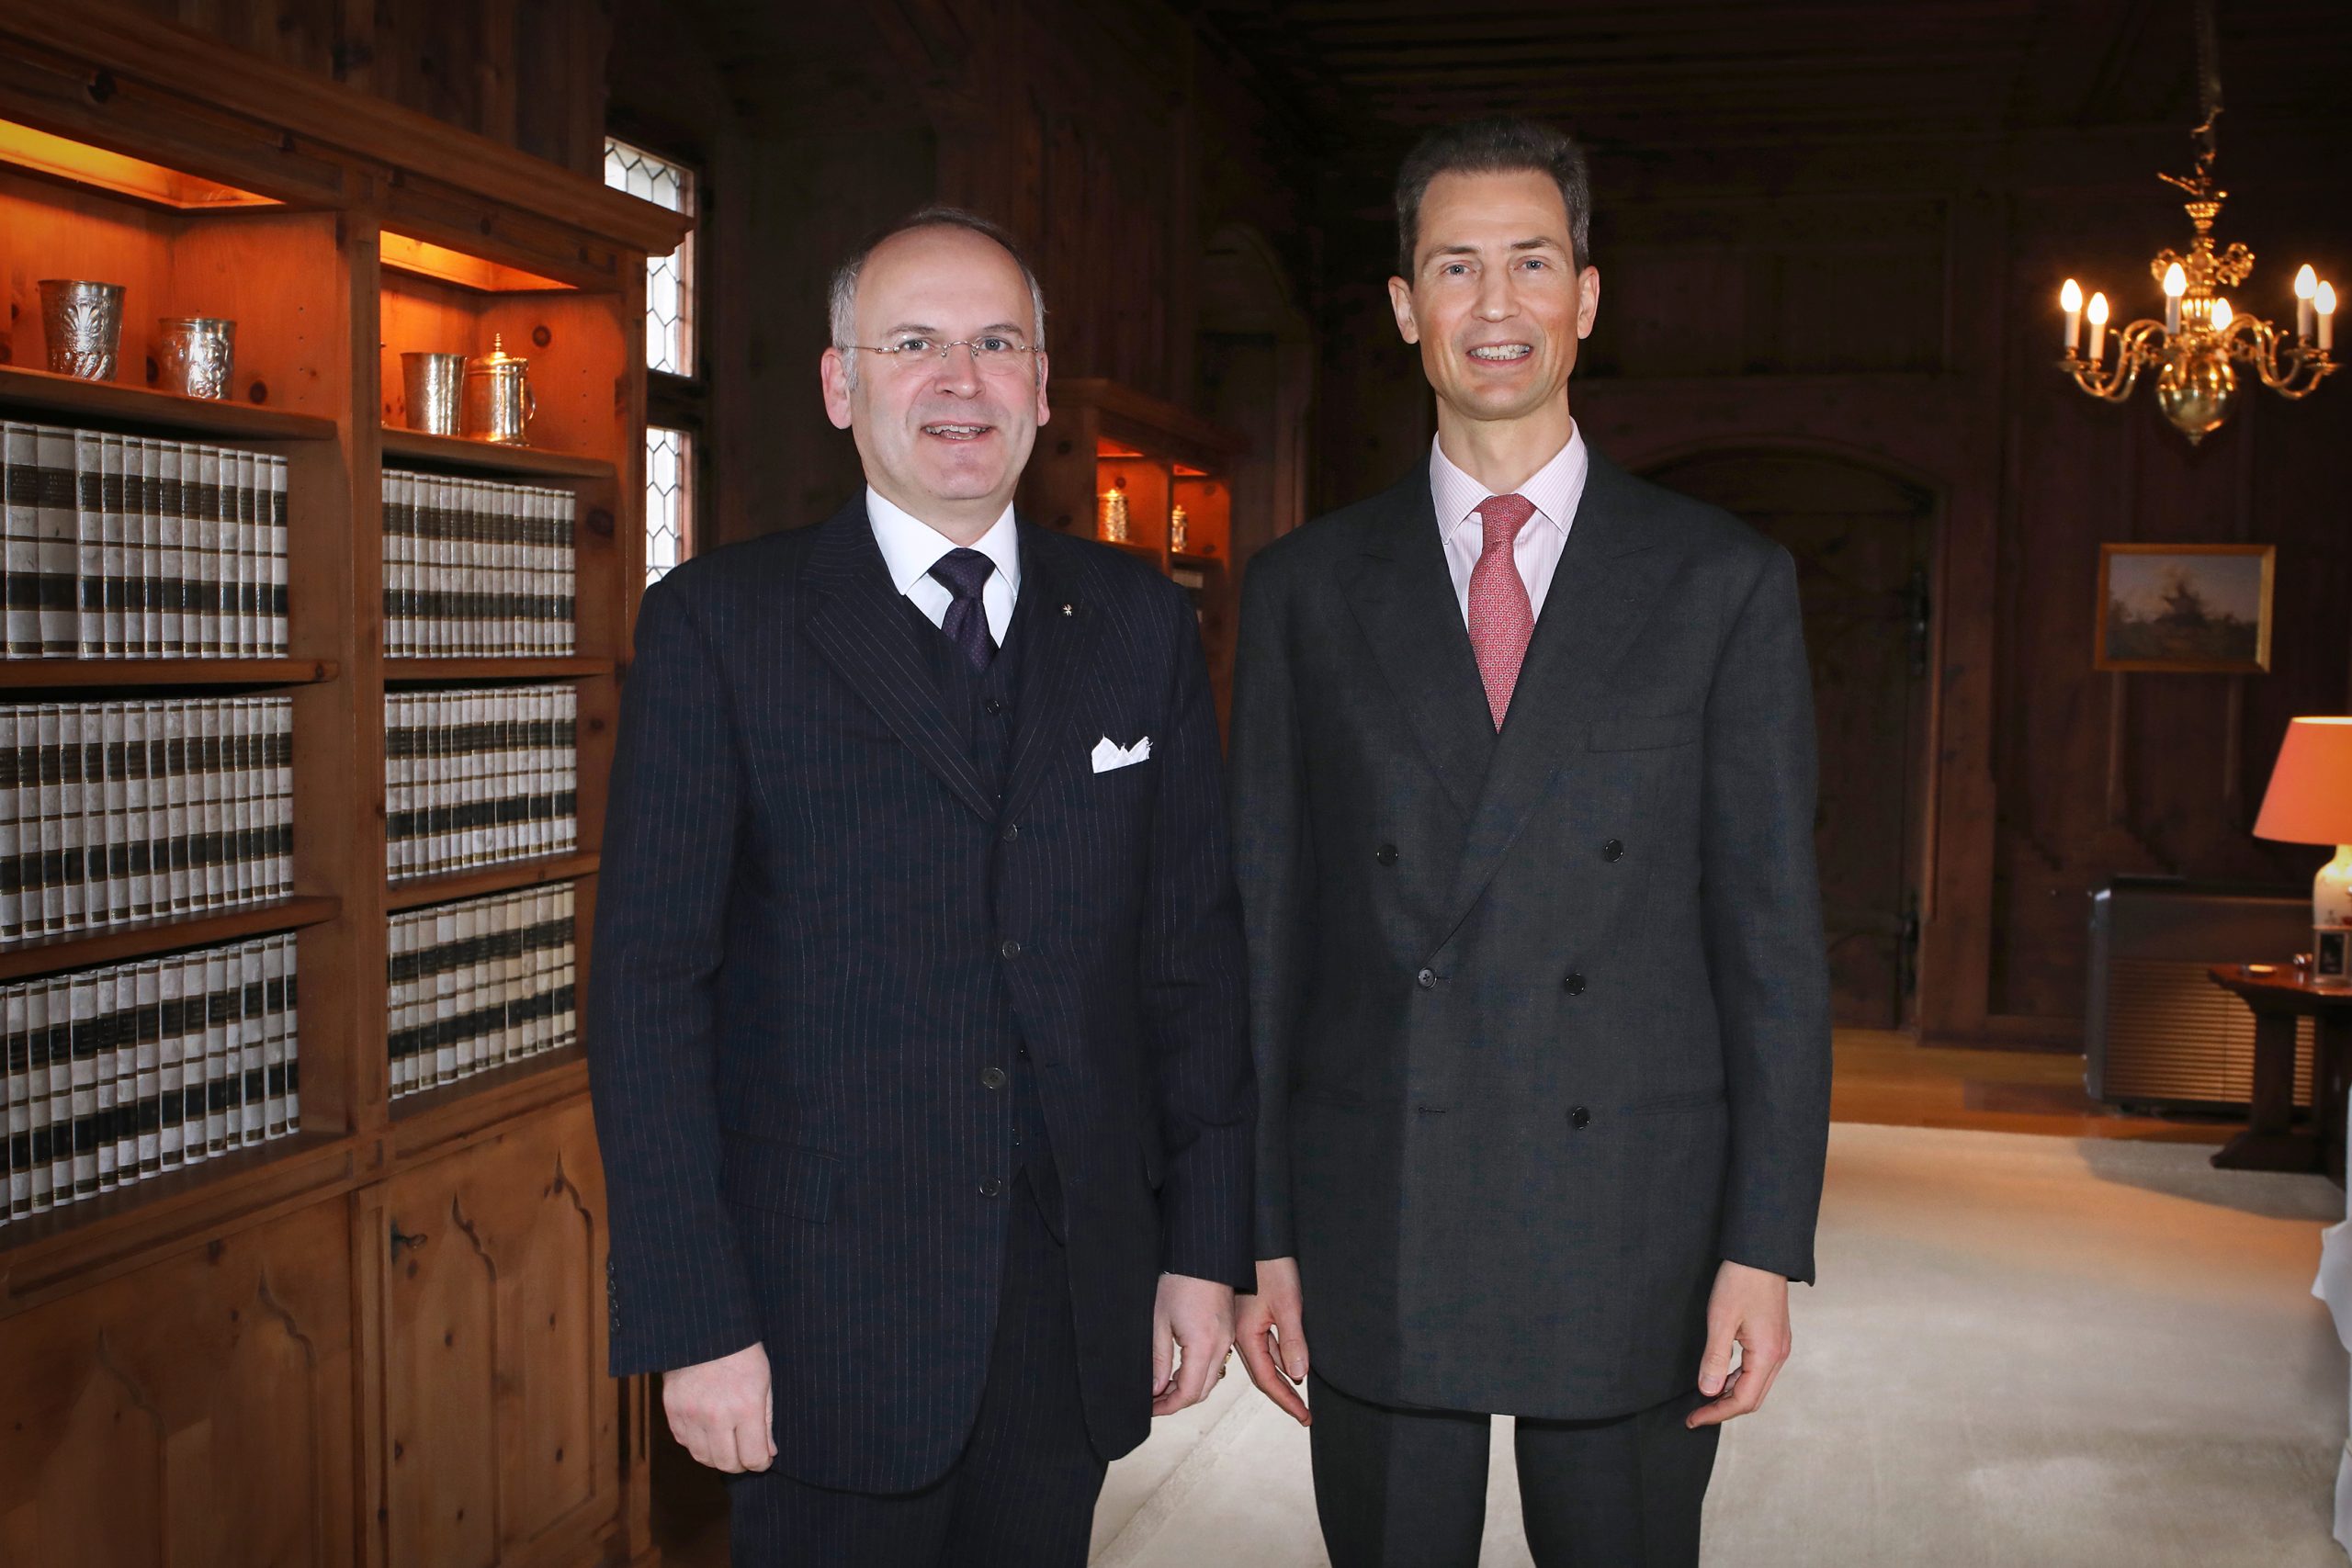 The new Ambassador of the Order of Malta Klaus Schweinsberg presented his credentials to the hereditary Prince Alois von und zu Liechtenstein